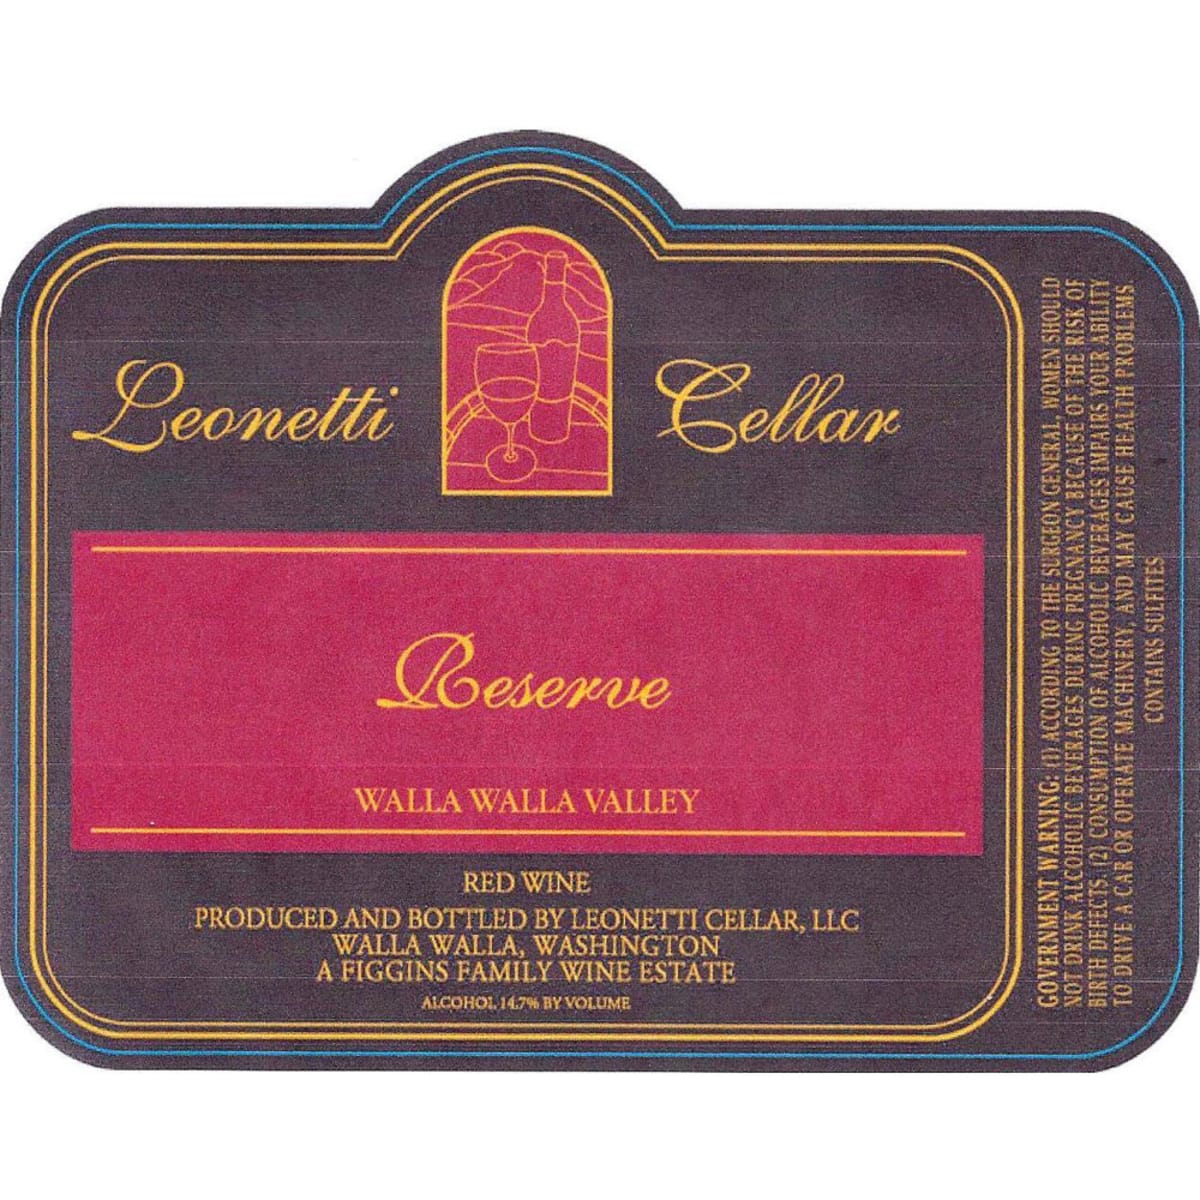 Leonetti Reserve 2002 Front Label